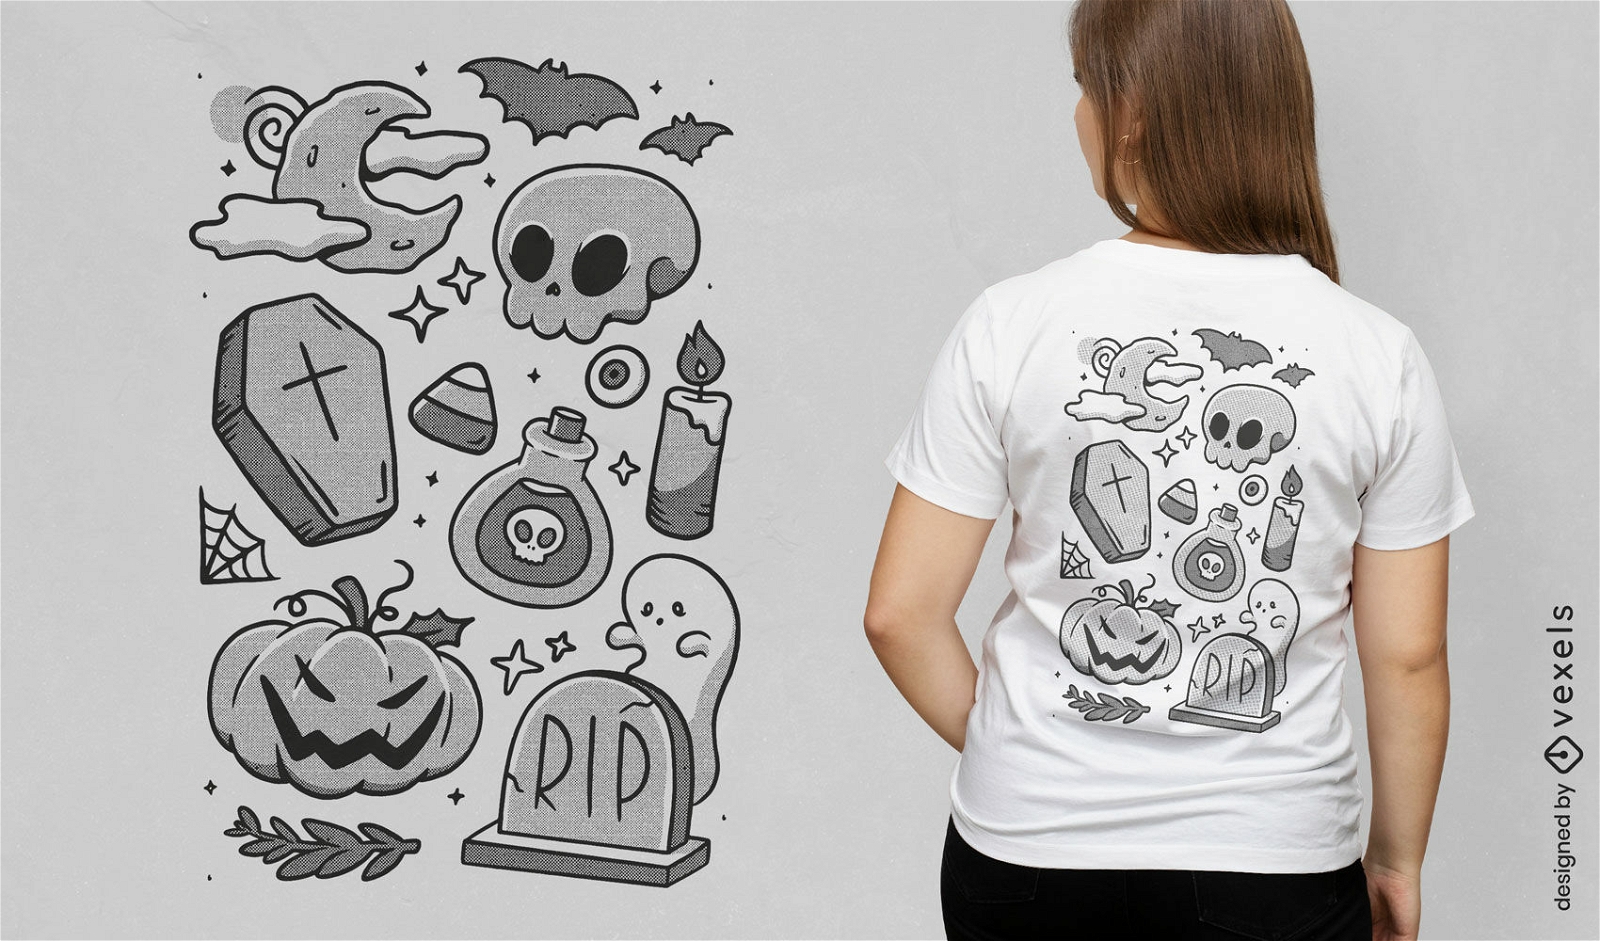 Halloweeen elements t-shirt design